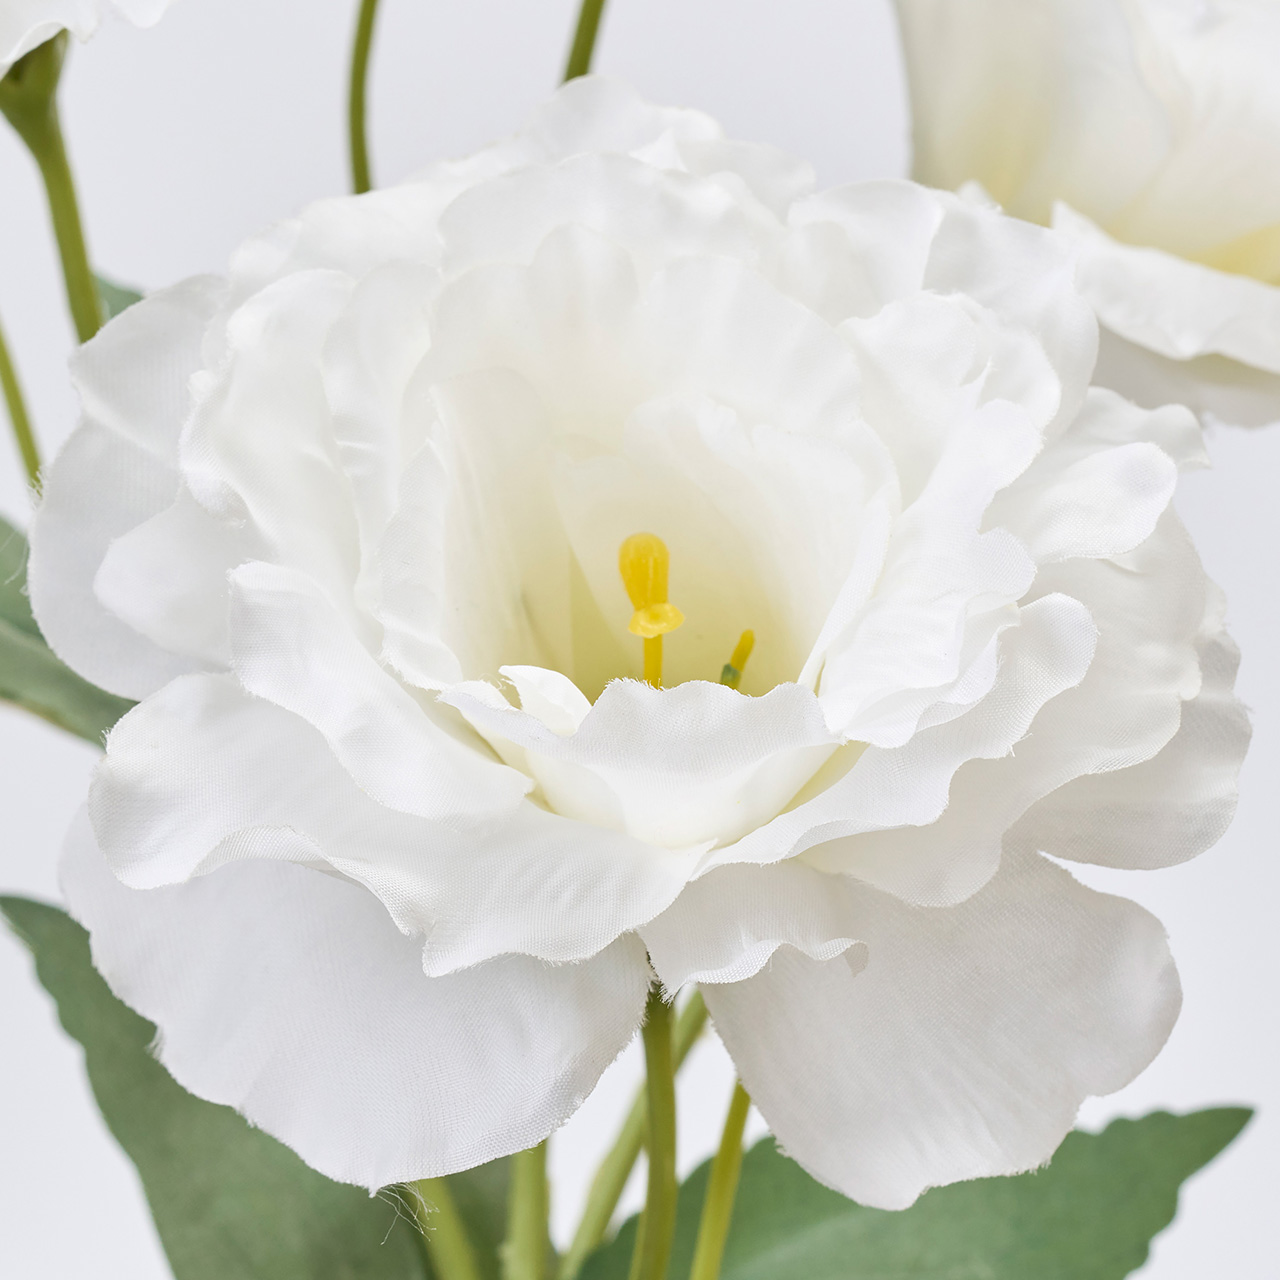 マイフラ 通販 Magiq マリアリシアンサス ホワイト アーティフィシャルフラワー 造花 リシアンサス トルコキキョウ Fm0035 001 ホワイト Magiq アーティフィシャルフラワー 造花 全国にmagiq 花器 花資材などをお届けします